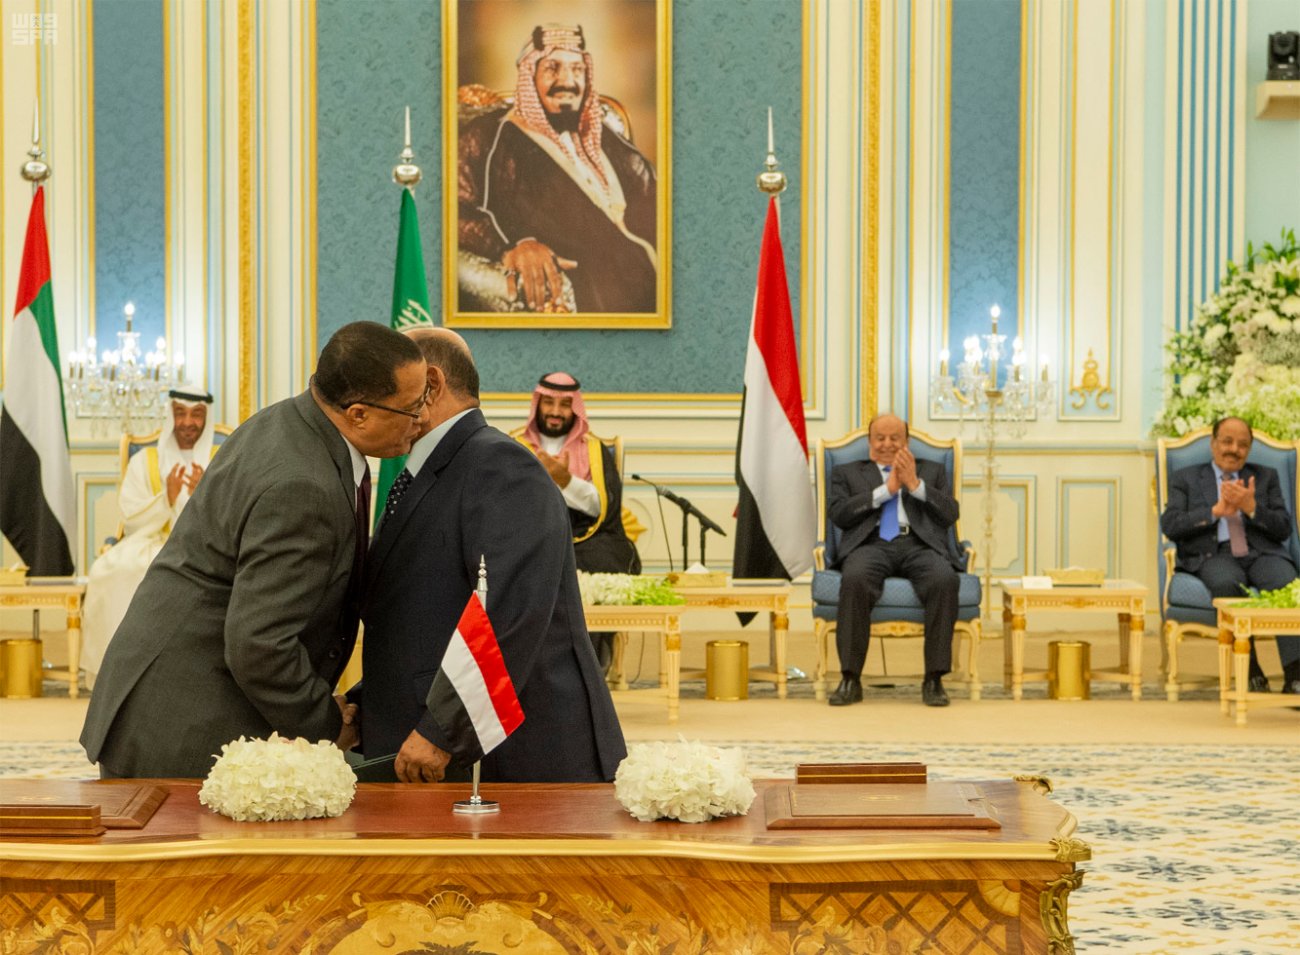 الاتحاد الأوروبي يرحب بـ اتفاق الرياض : وضَع حداً للنزاع المستمر